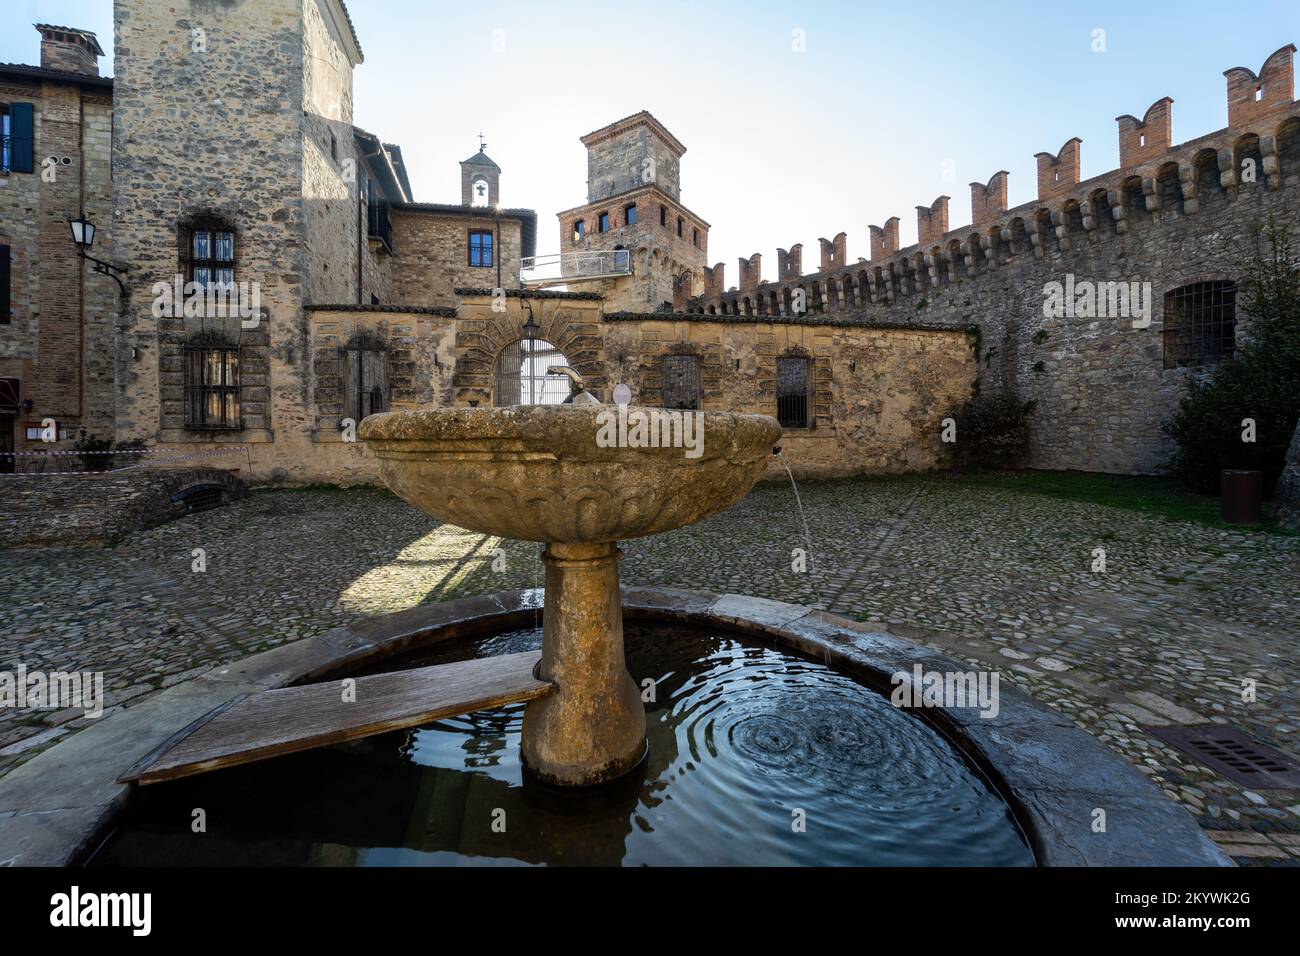 Borgo medievale e castello di Vigoleno nell'Appennino in provincia di Piacenza, Emilia Romagna, Italia settentrionale - piazza centrale con fontana Foto Stock